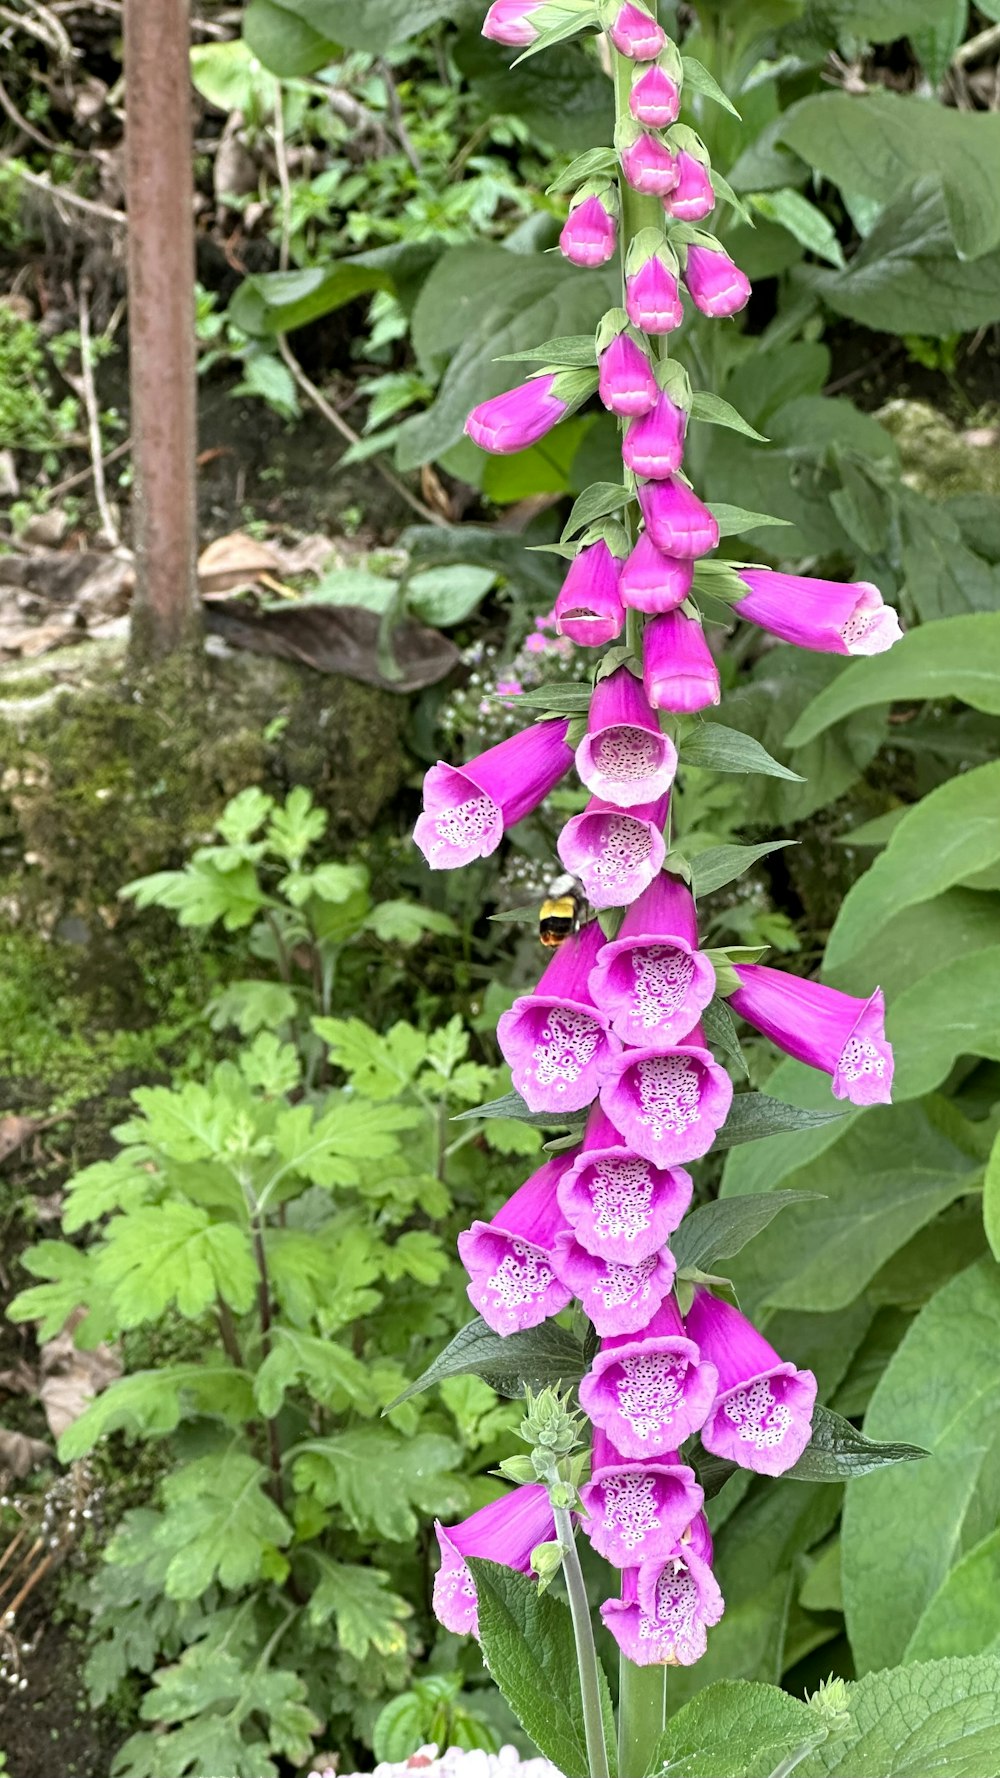 a purple flower is blooming in a garden